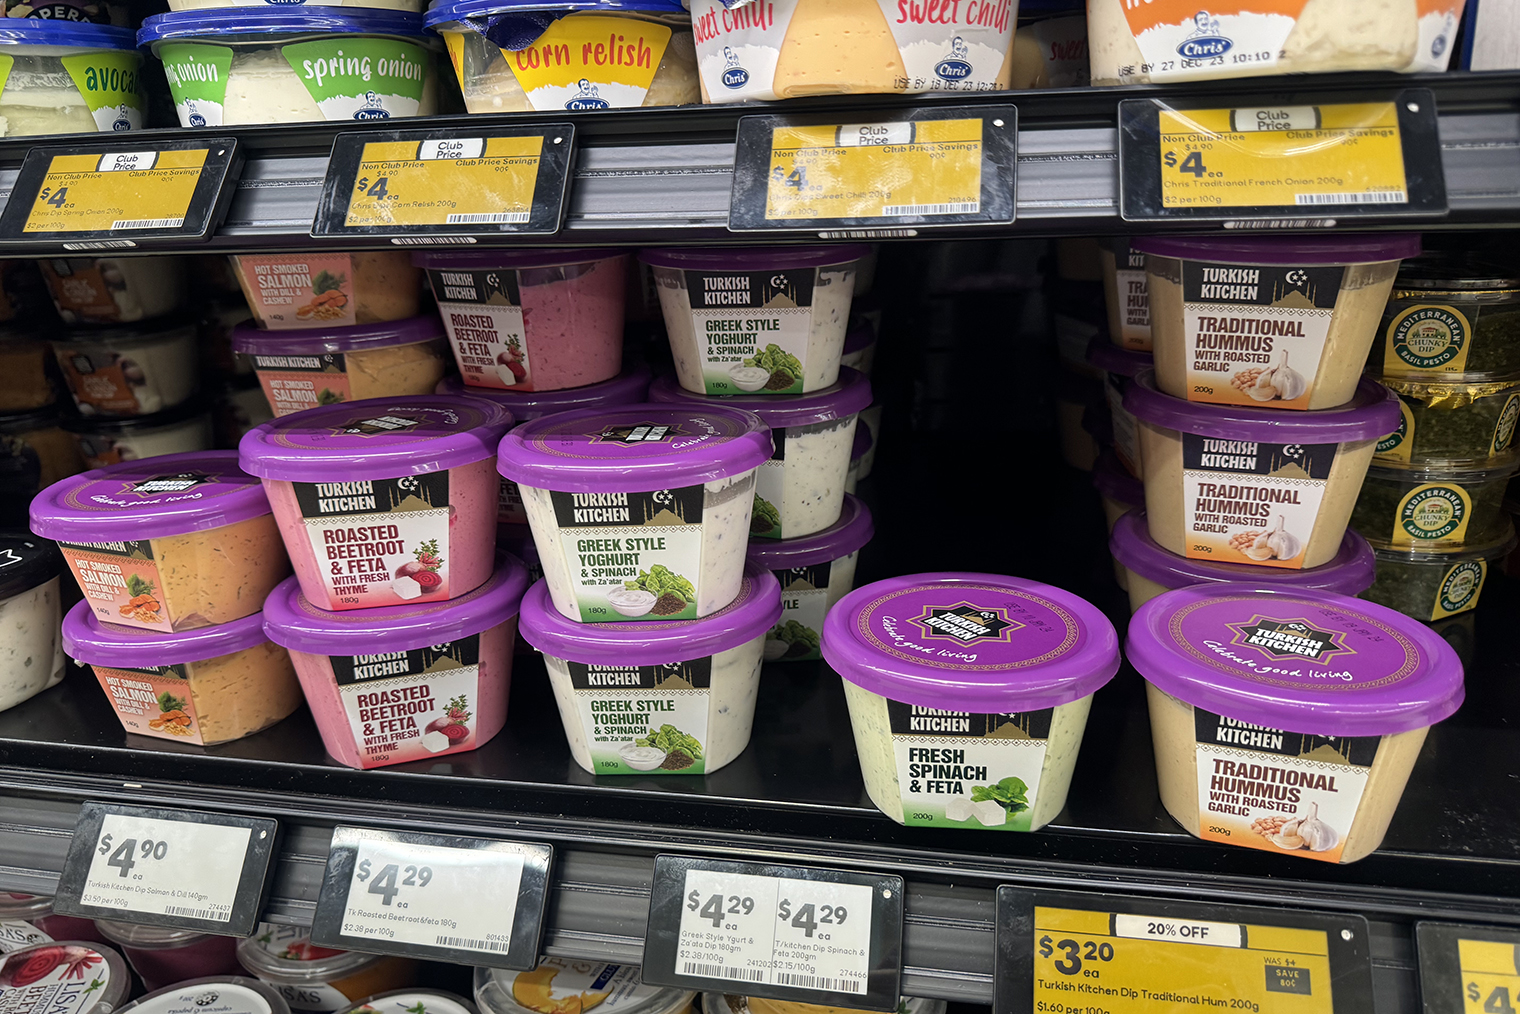 Греческий йогурт с добавками из свеклы или шпината — сметану им можно заменить с натяжкой. Но в такой вкусно макать чипсы